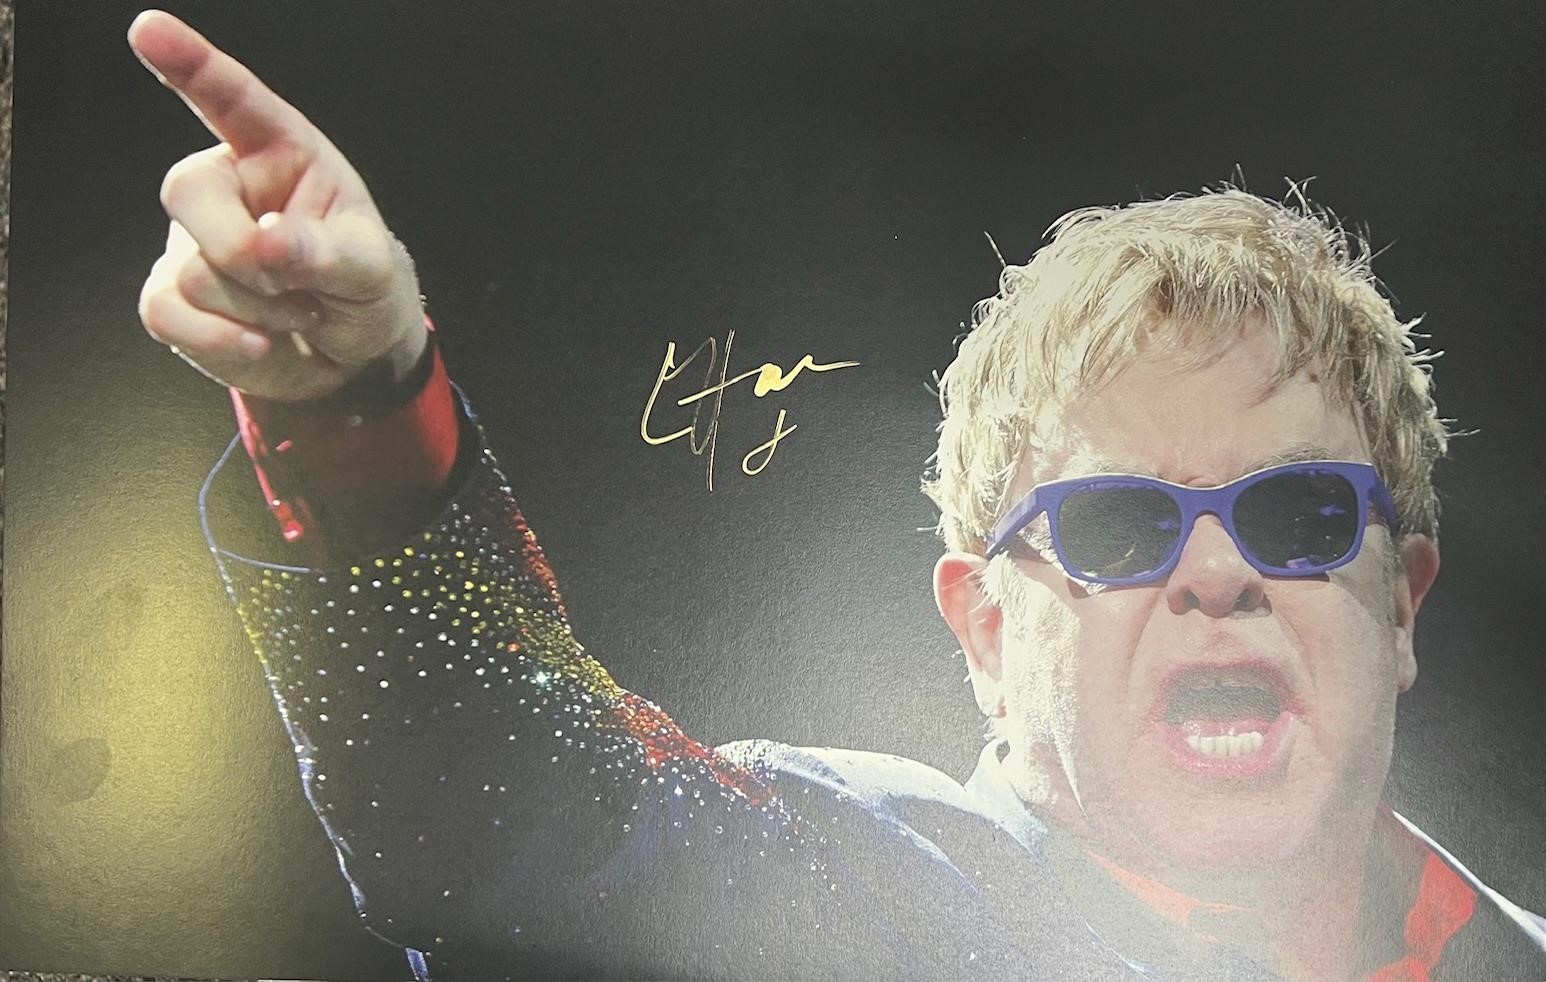 Elton John Signed 11x17 with COA